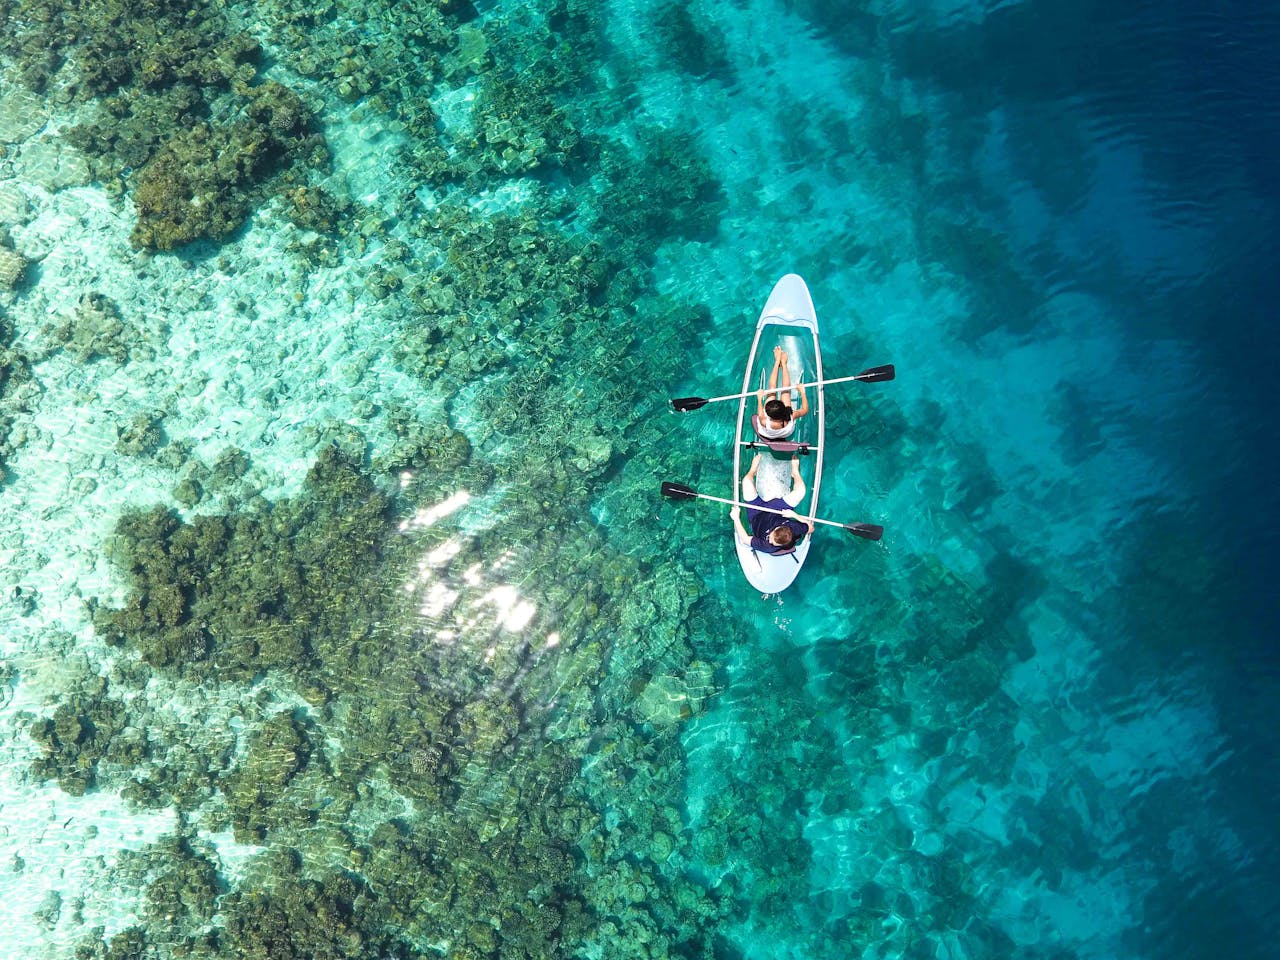 Kayaking in Maldives with a view. Photo Credit: Asad Photo Maldives via Pexels